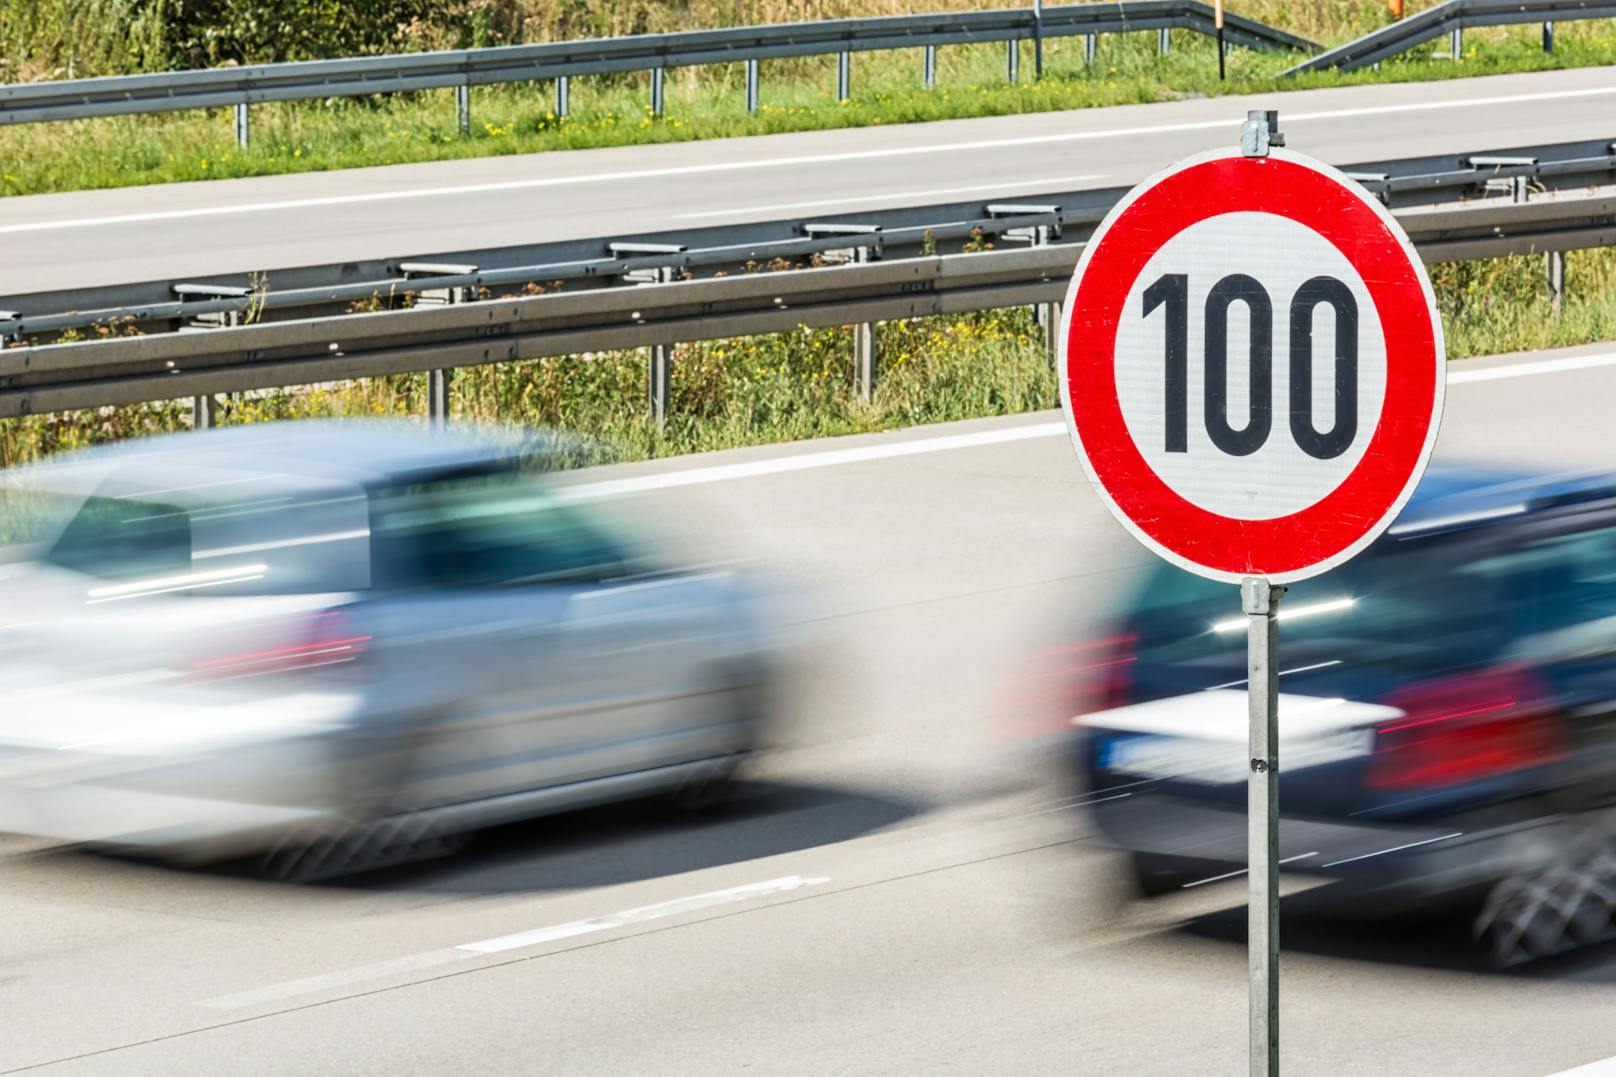 Statt der erlaubten 130 km/h war der Probeführerscheinbesitzer mit 210 km/h unterwegs.